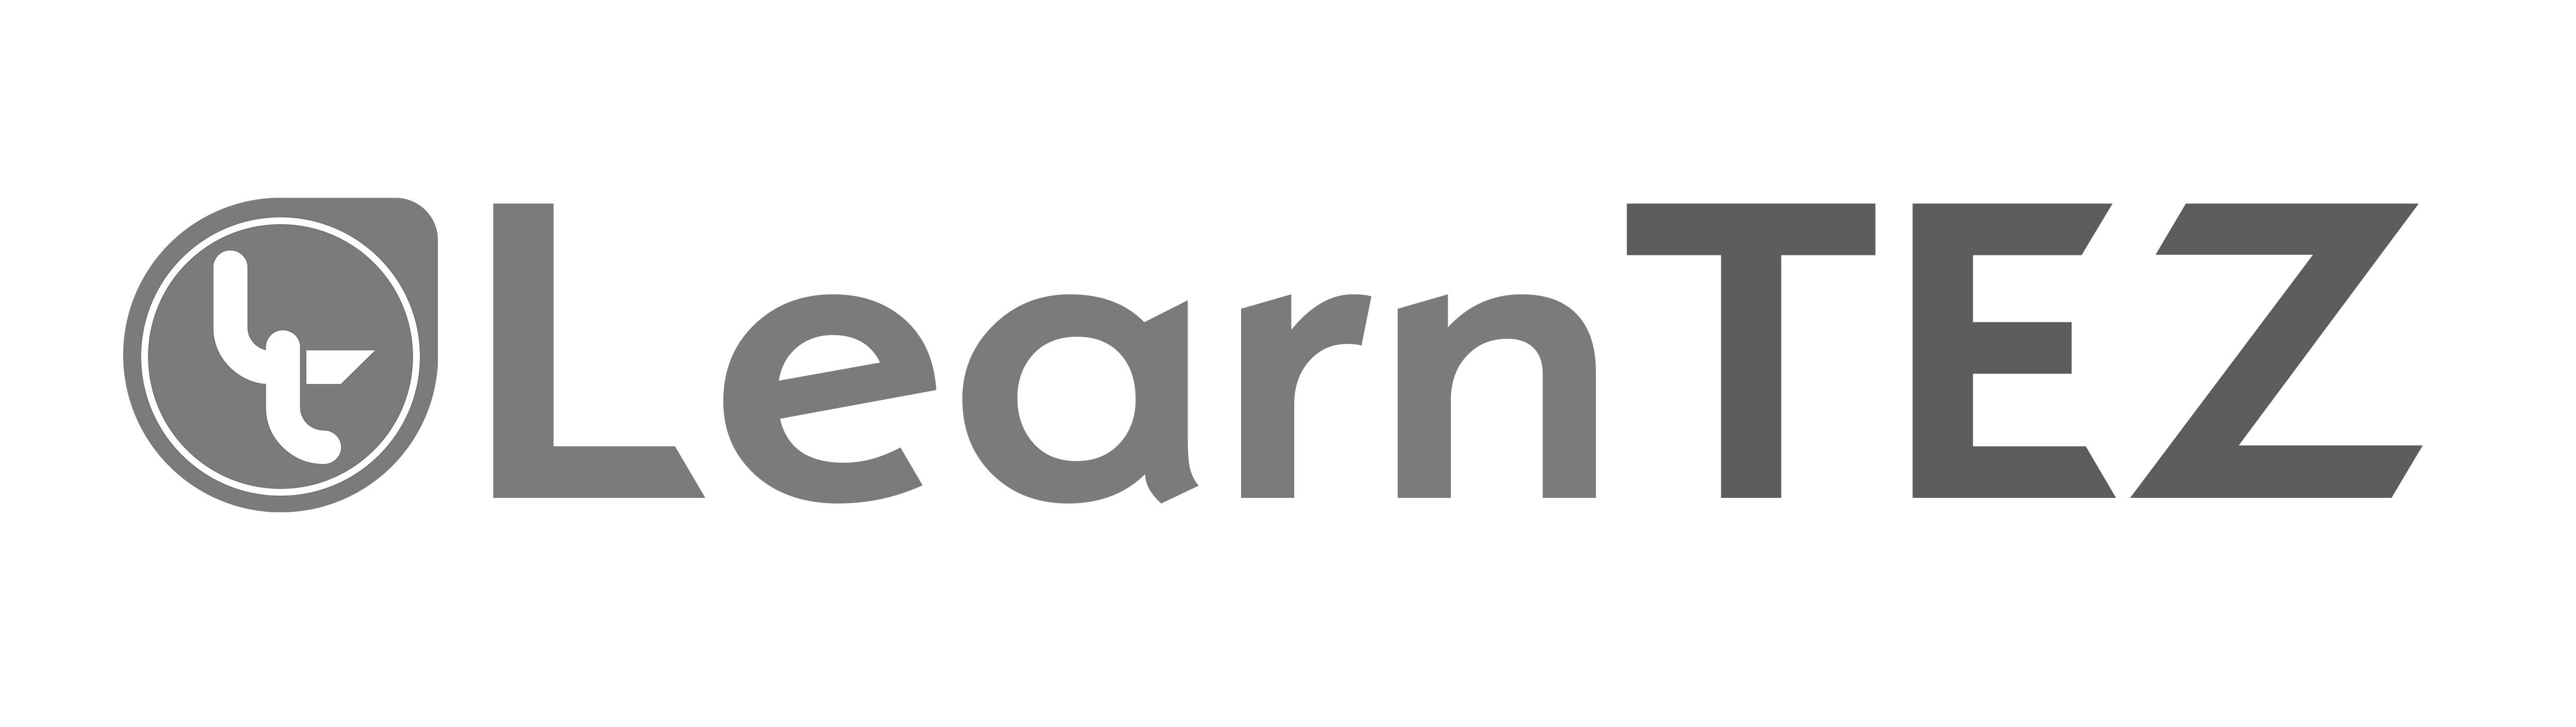 learntez-logo